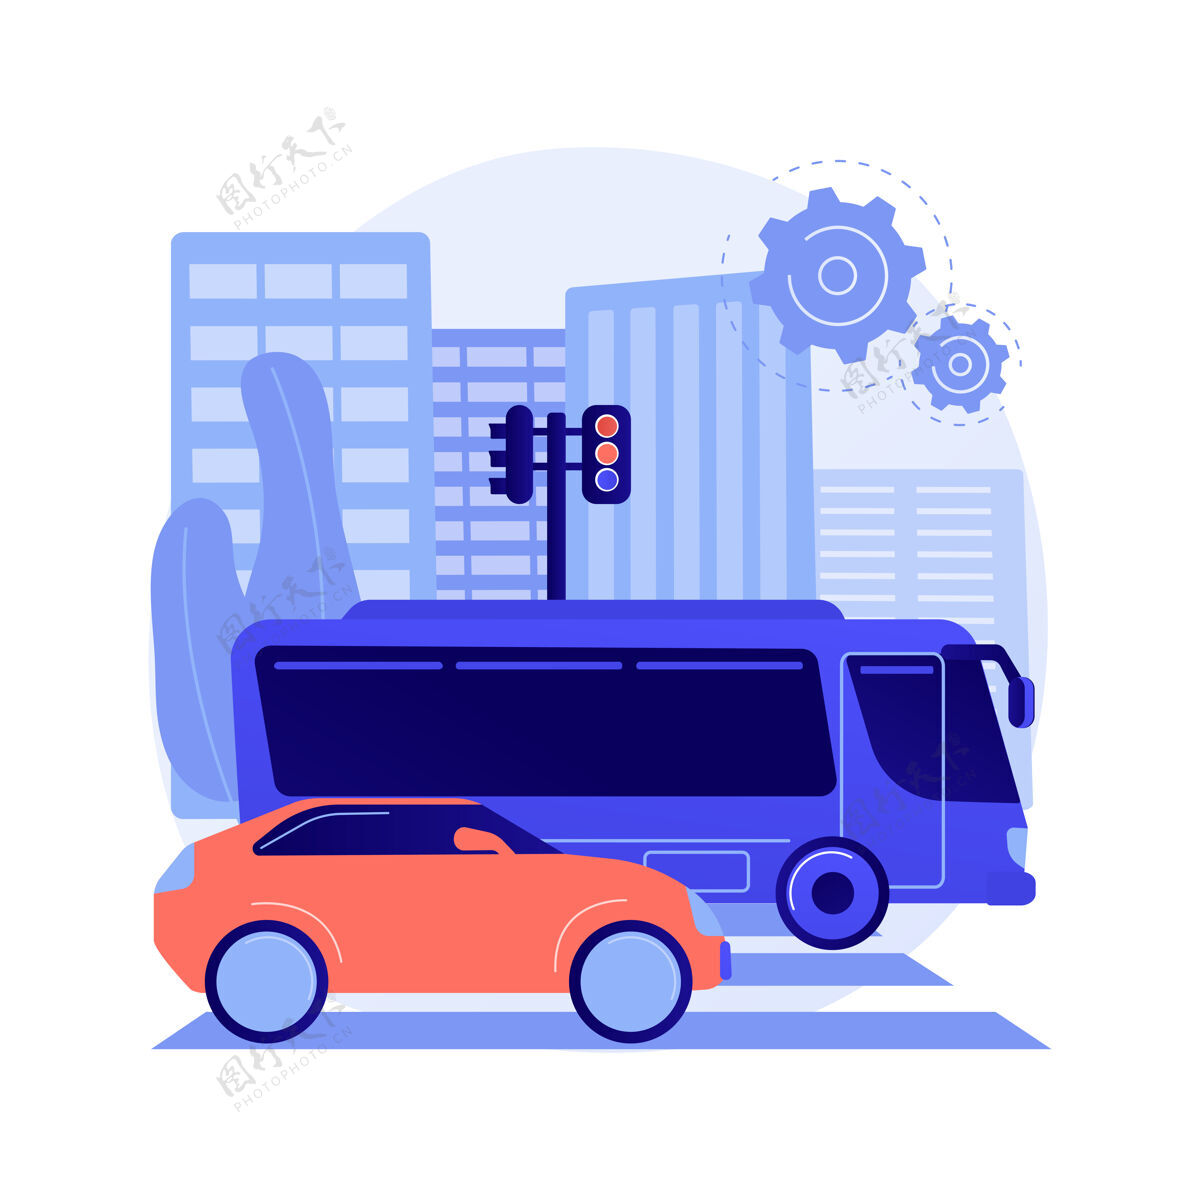 路线地面运输抽象概念矢量图解道路运输 货物移动 人 公路或铁路 公路上的卡车 环形交叉口交通 汽车快速行驶 公共汽车站抽象比喻驾驶交通公共汽车